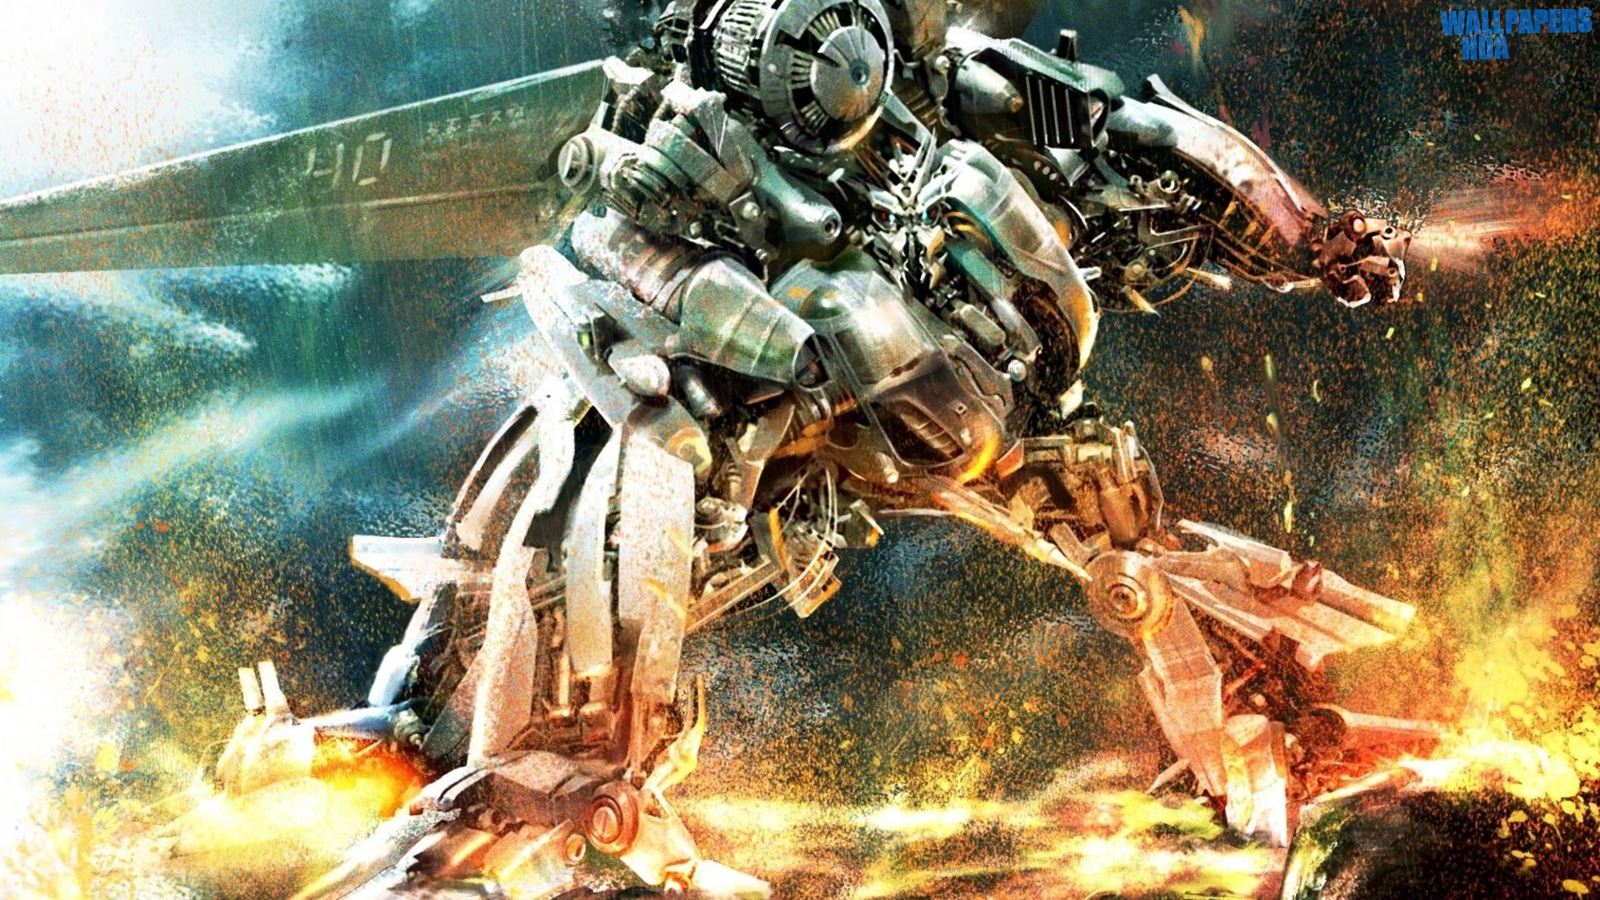 Transformers robot war wallpaper 1600x900